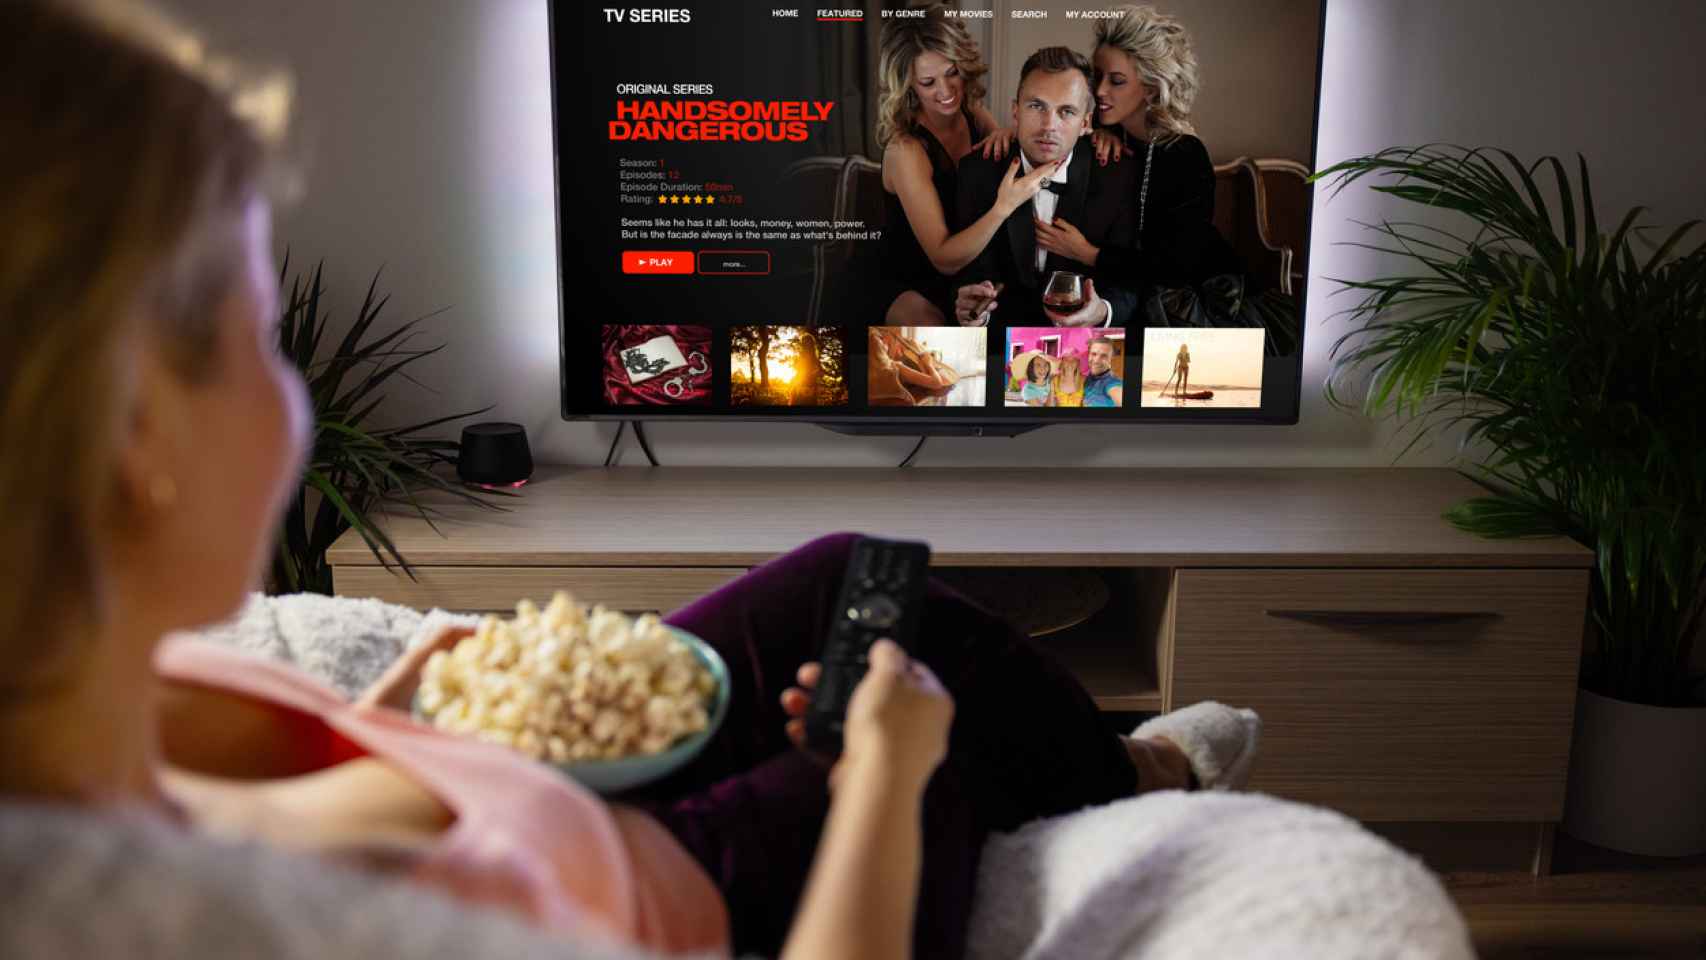 Por qué las televisiones han bajado tanto de precio en los últimos tiempos  - La Opinión